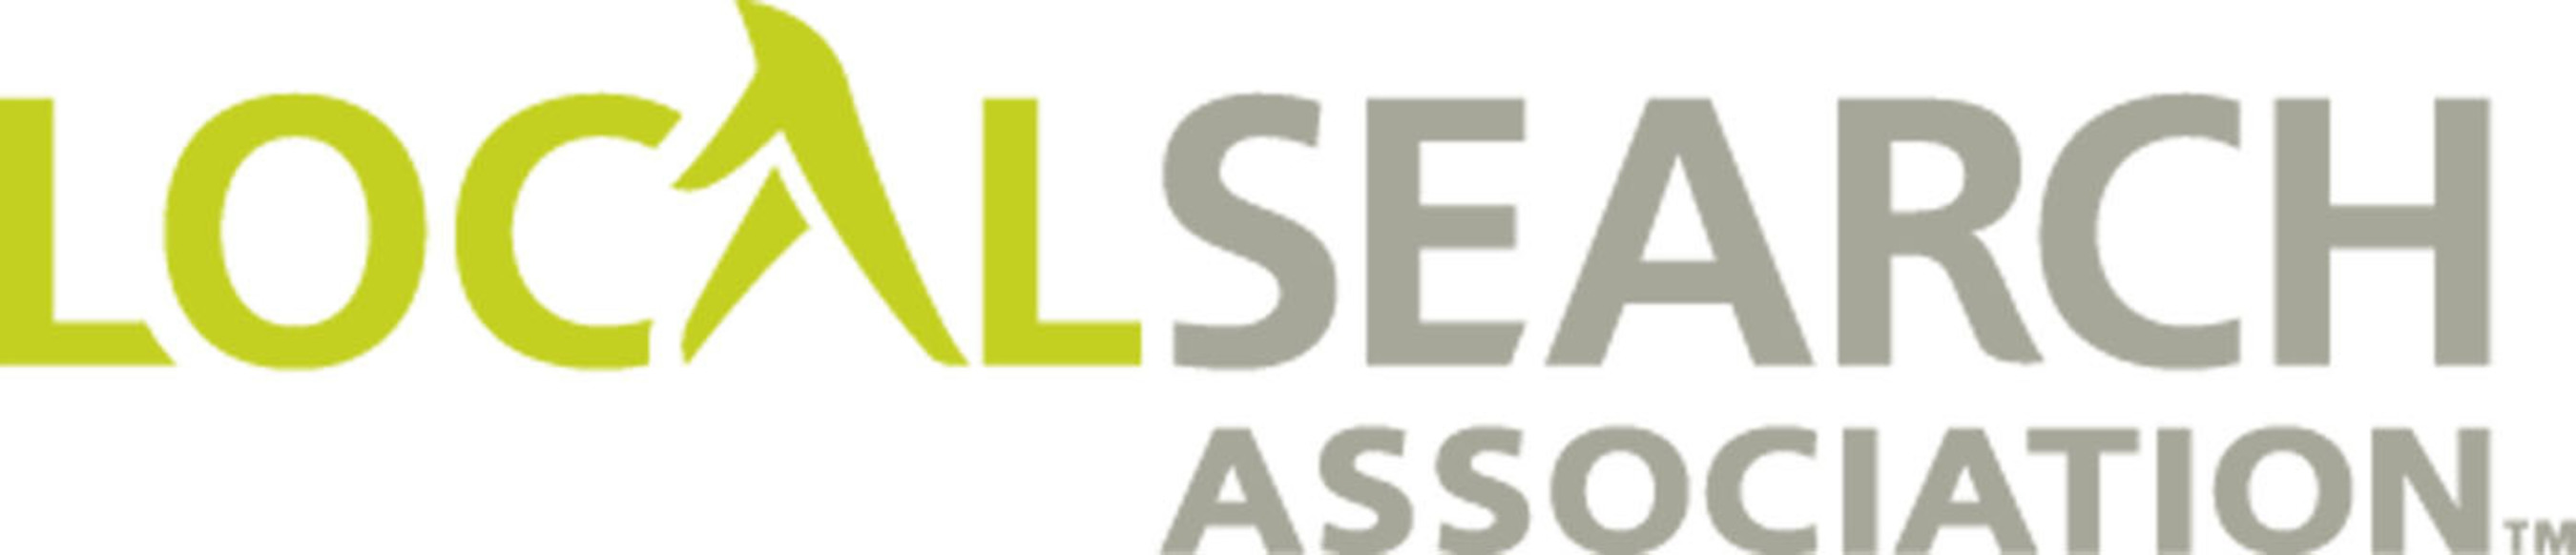 Local Search Association logo. (PRNewsFoto/Local Search Association) (PRNewsFoto/)